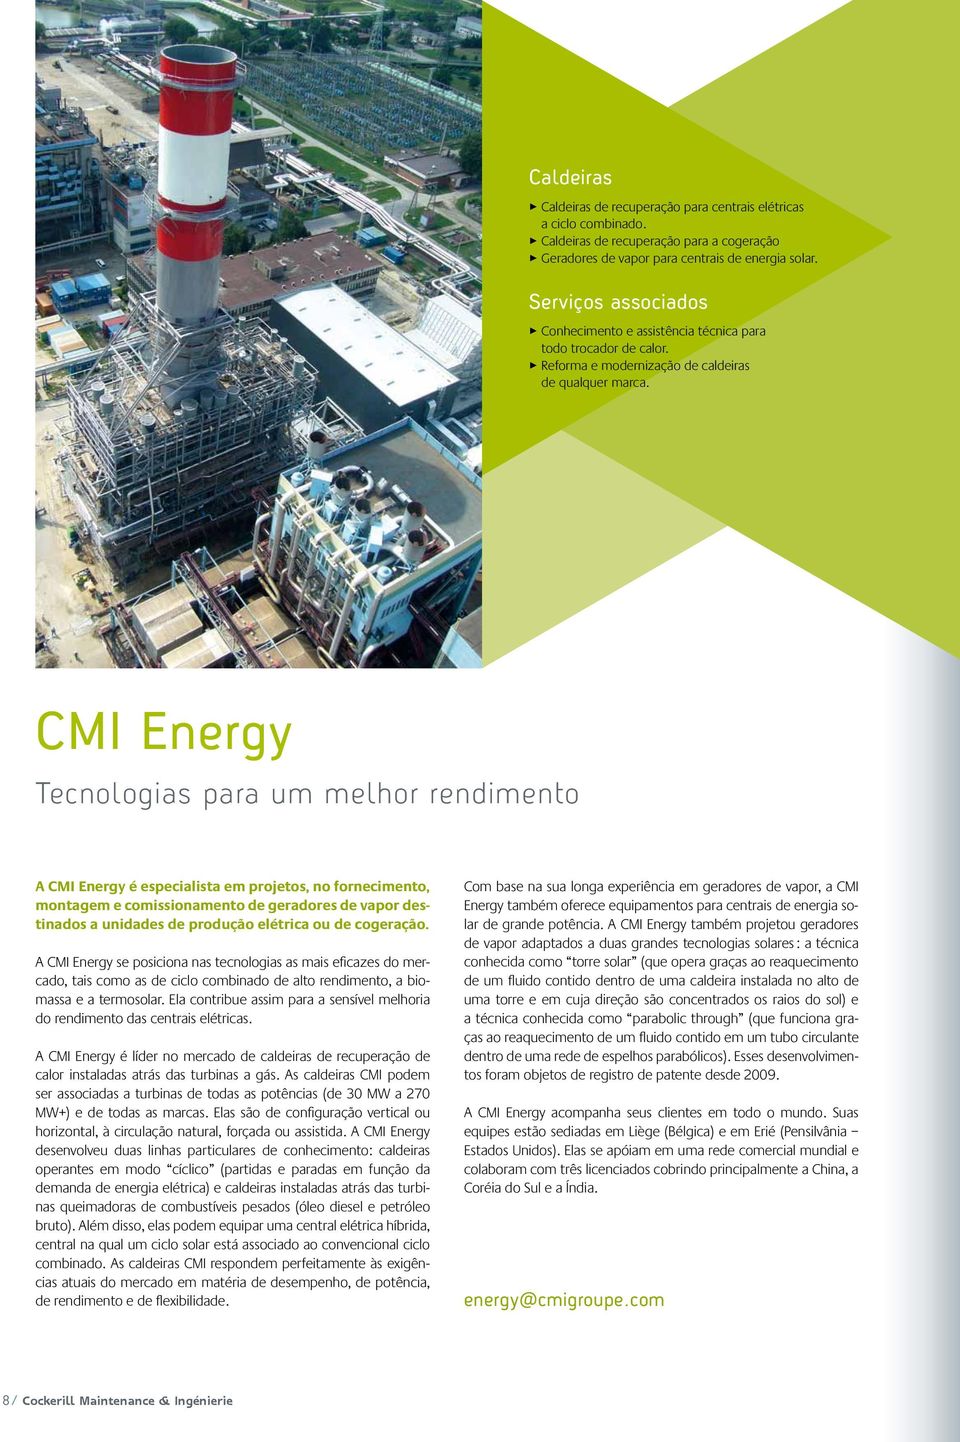 CMI Energy Tecnologias para um melhor rendimento A CMI Energy é especialista em projetos, no fornecimento, montagem e comissionamento de geradores de vapor destinados a unidades de produção elétrica